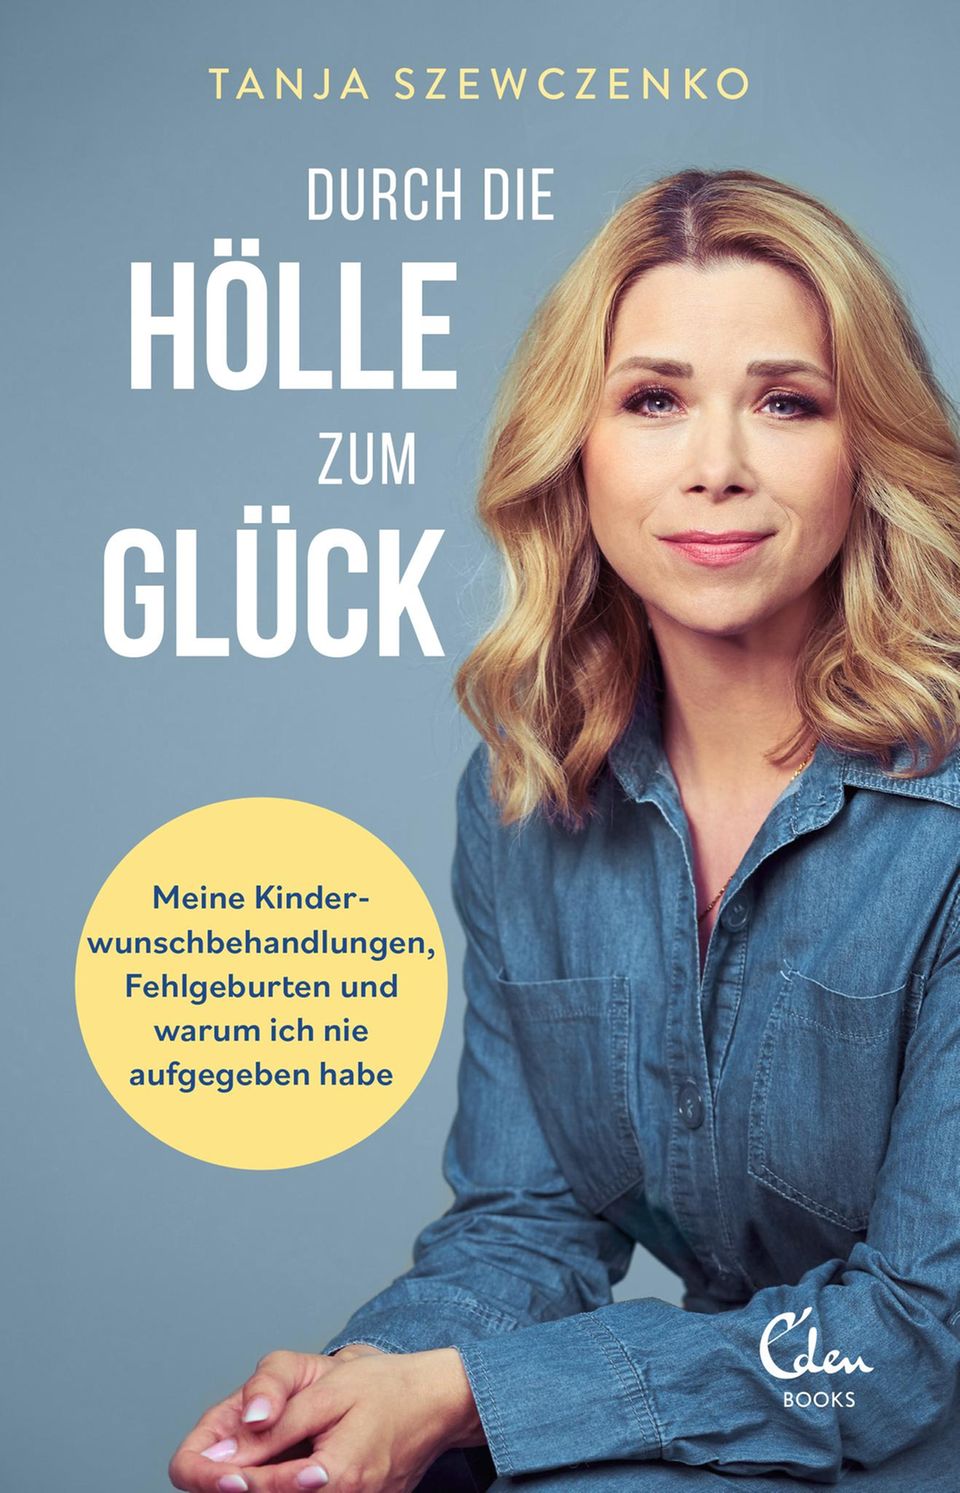 Tanja Szewczenkos Buch "Durch die Hölle zum Glück: Meine Kinderwunschbehandlungen, Fehlgeburten und warum ich nie aufgegeben habe" erscheint am 5. November 2022